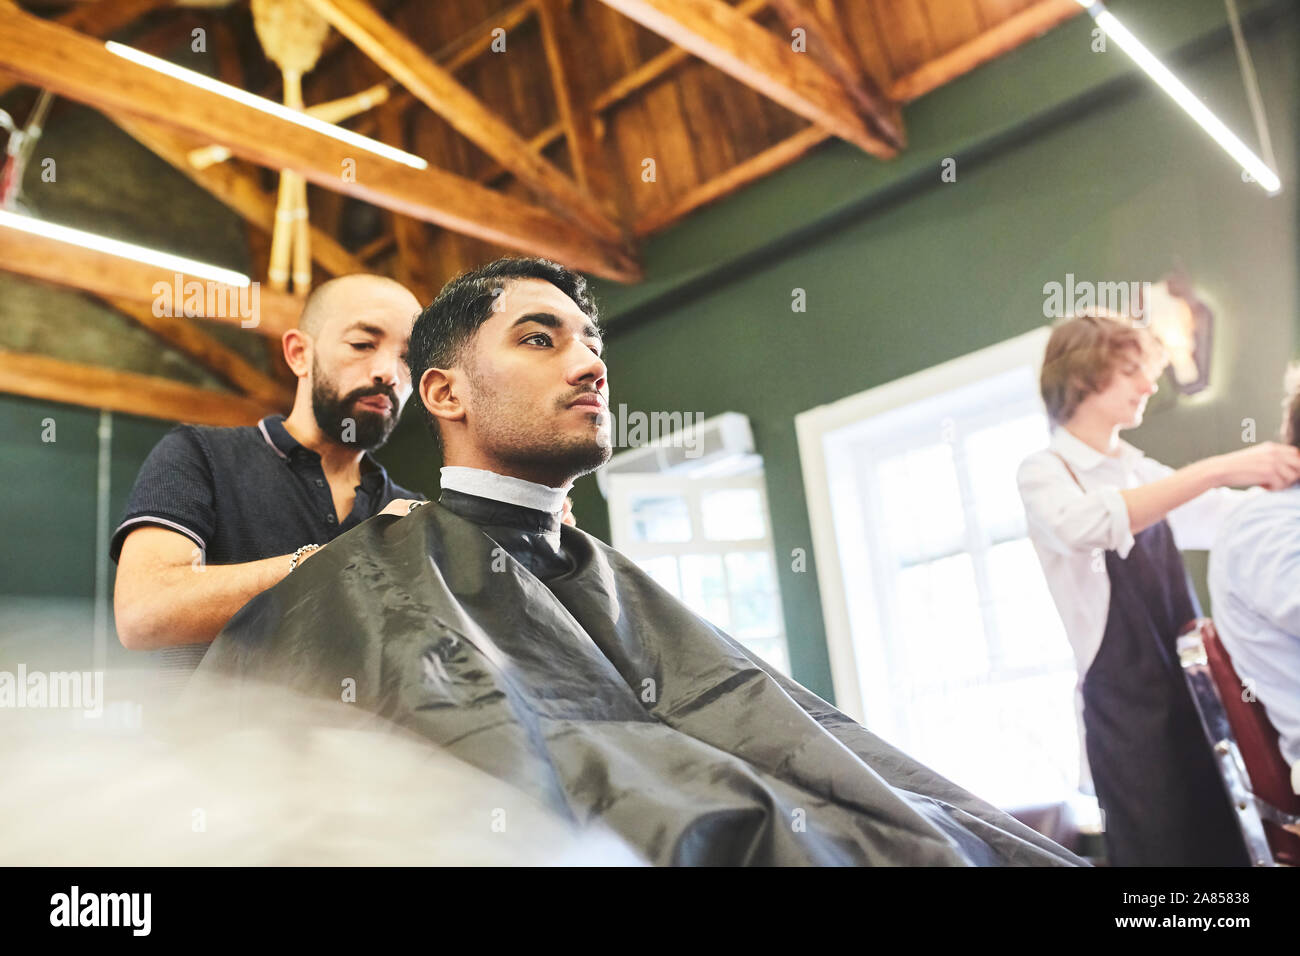 Client de sexe masculin dans une coupe coiffure Banque D'Images